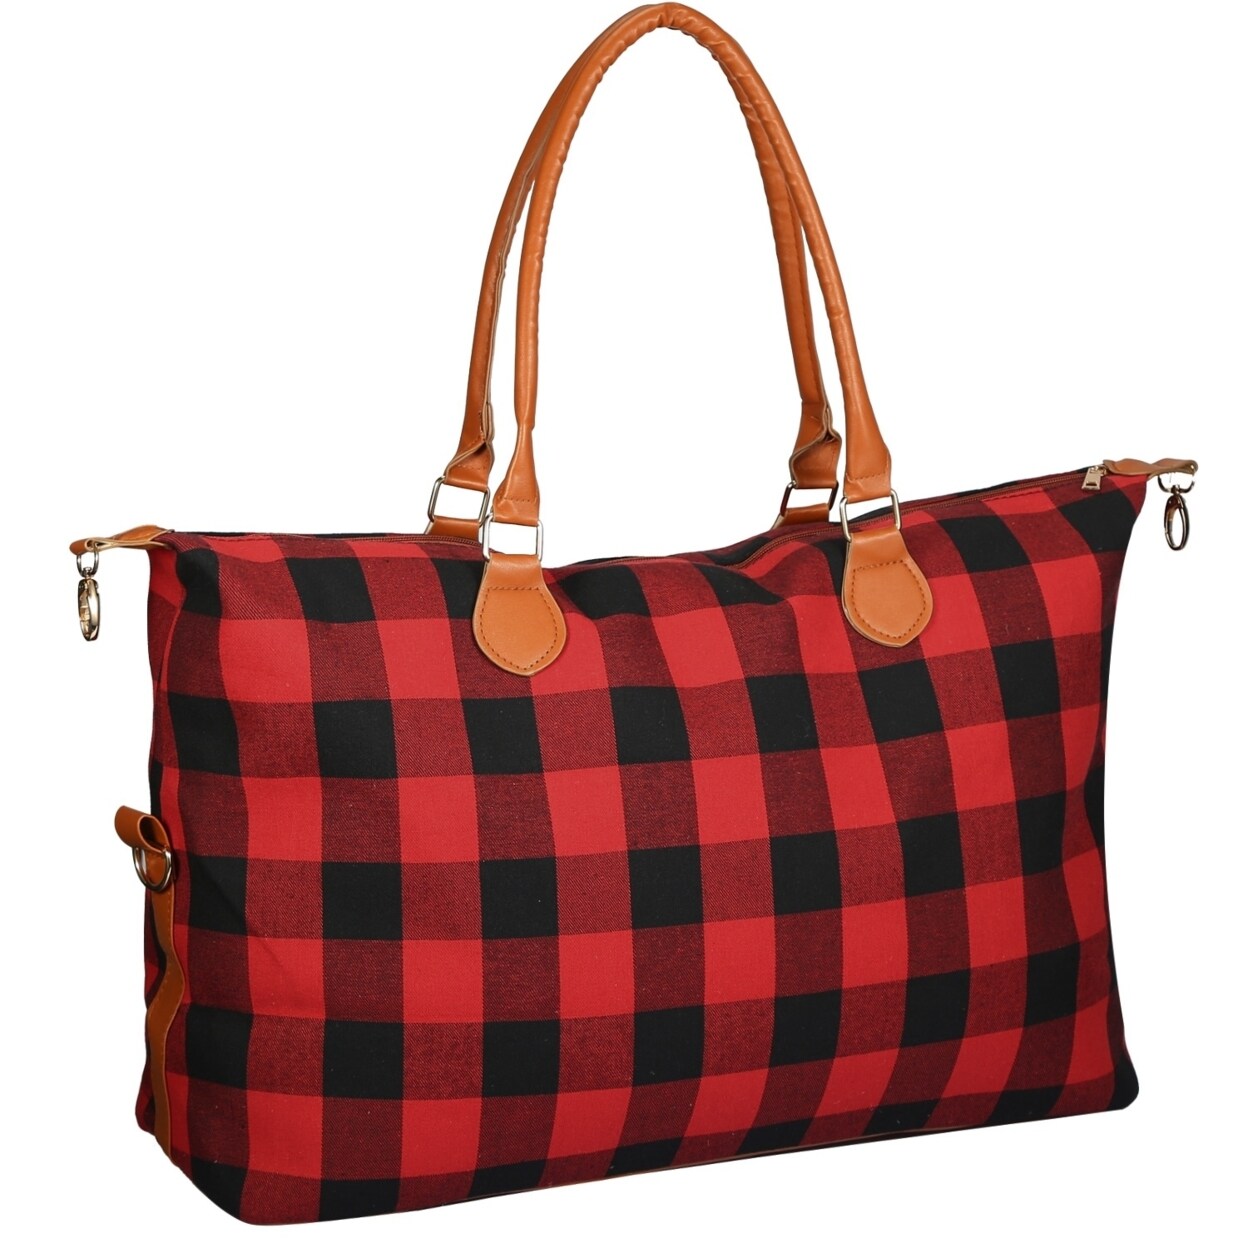 Duffle bag women Handbag Carry on luggage travel bag Portable